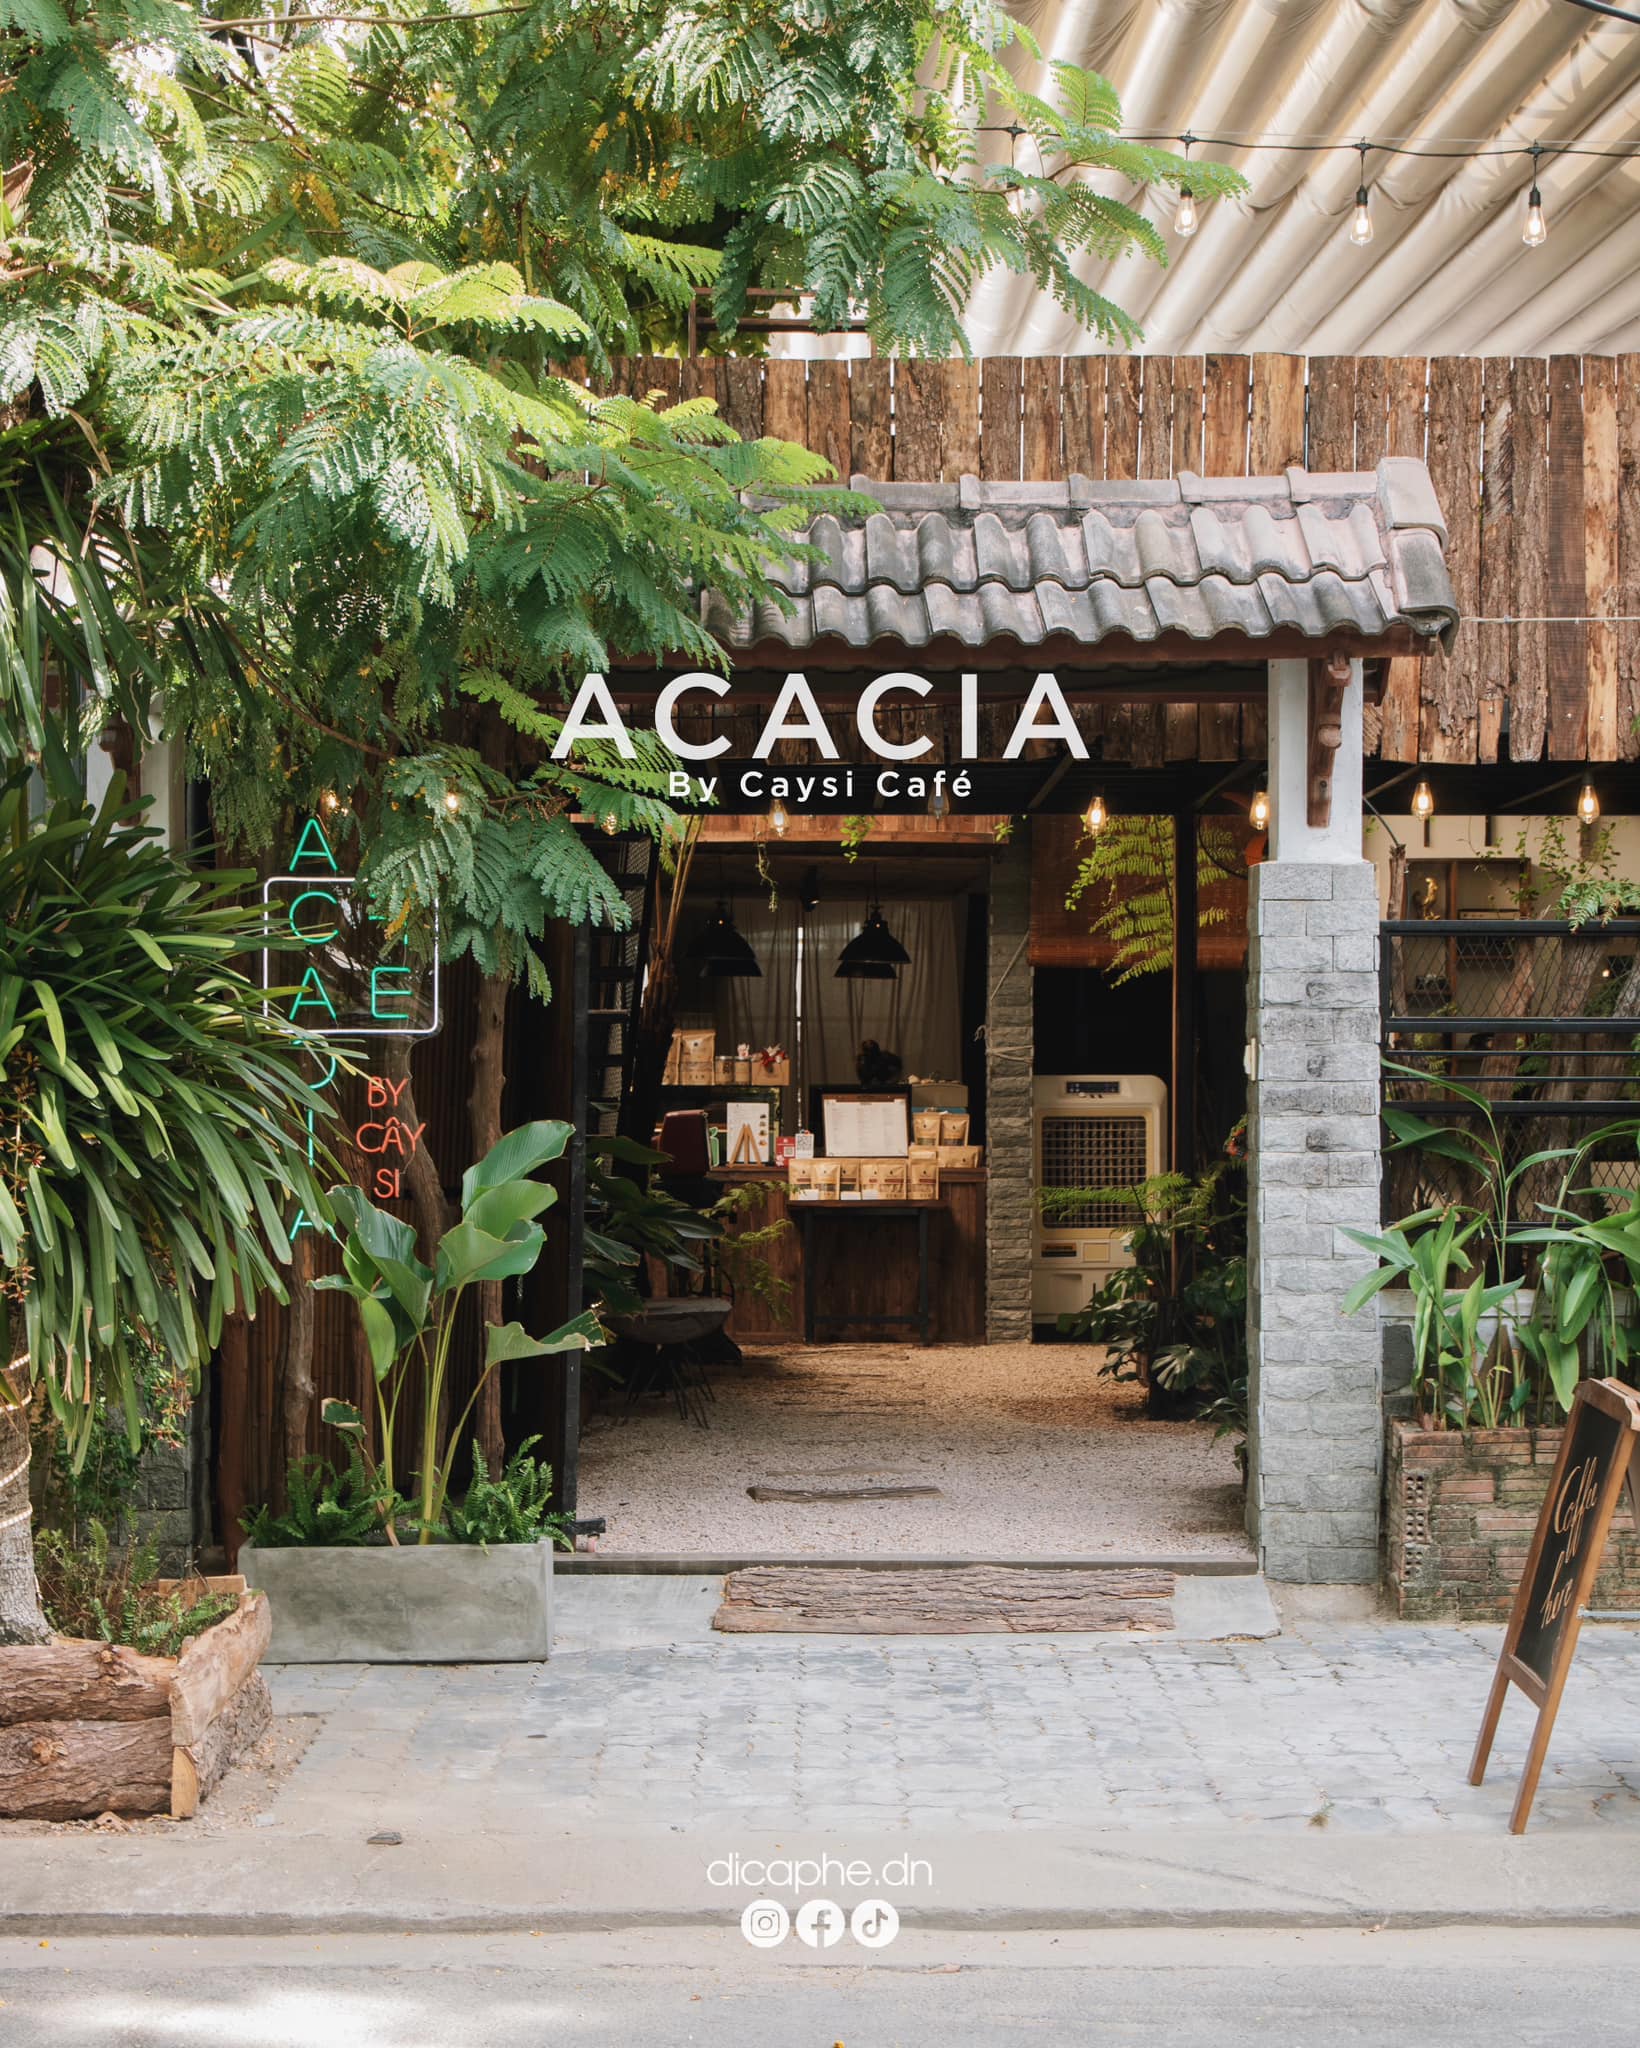 Acacia by CaySi cafe nằm trong một khu dân cư yên tĩnh gần biển.